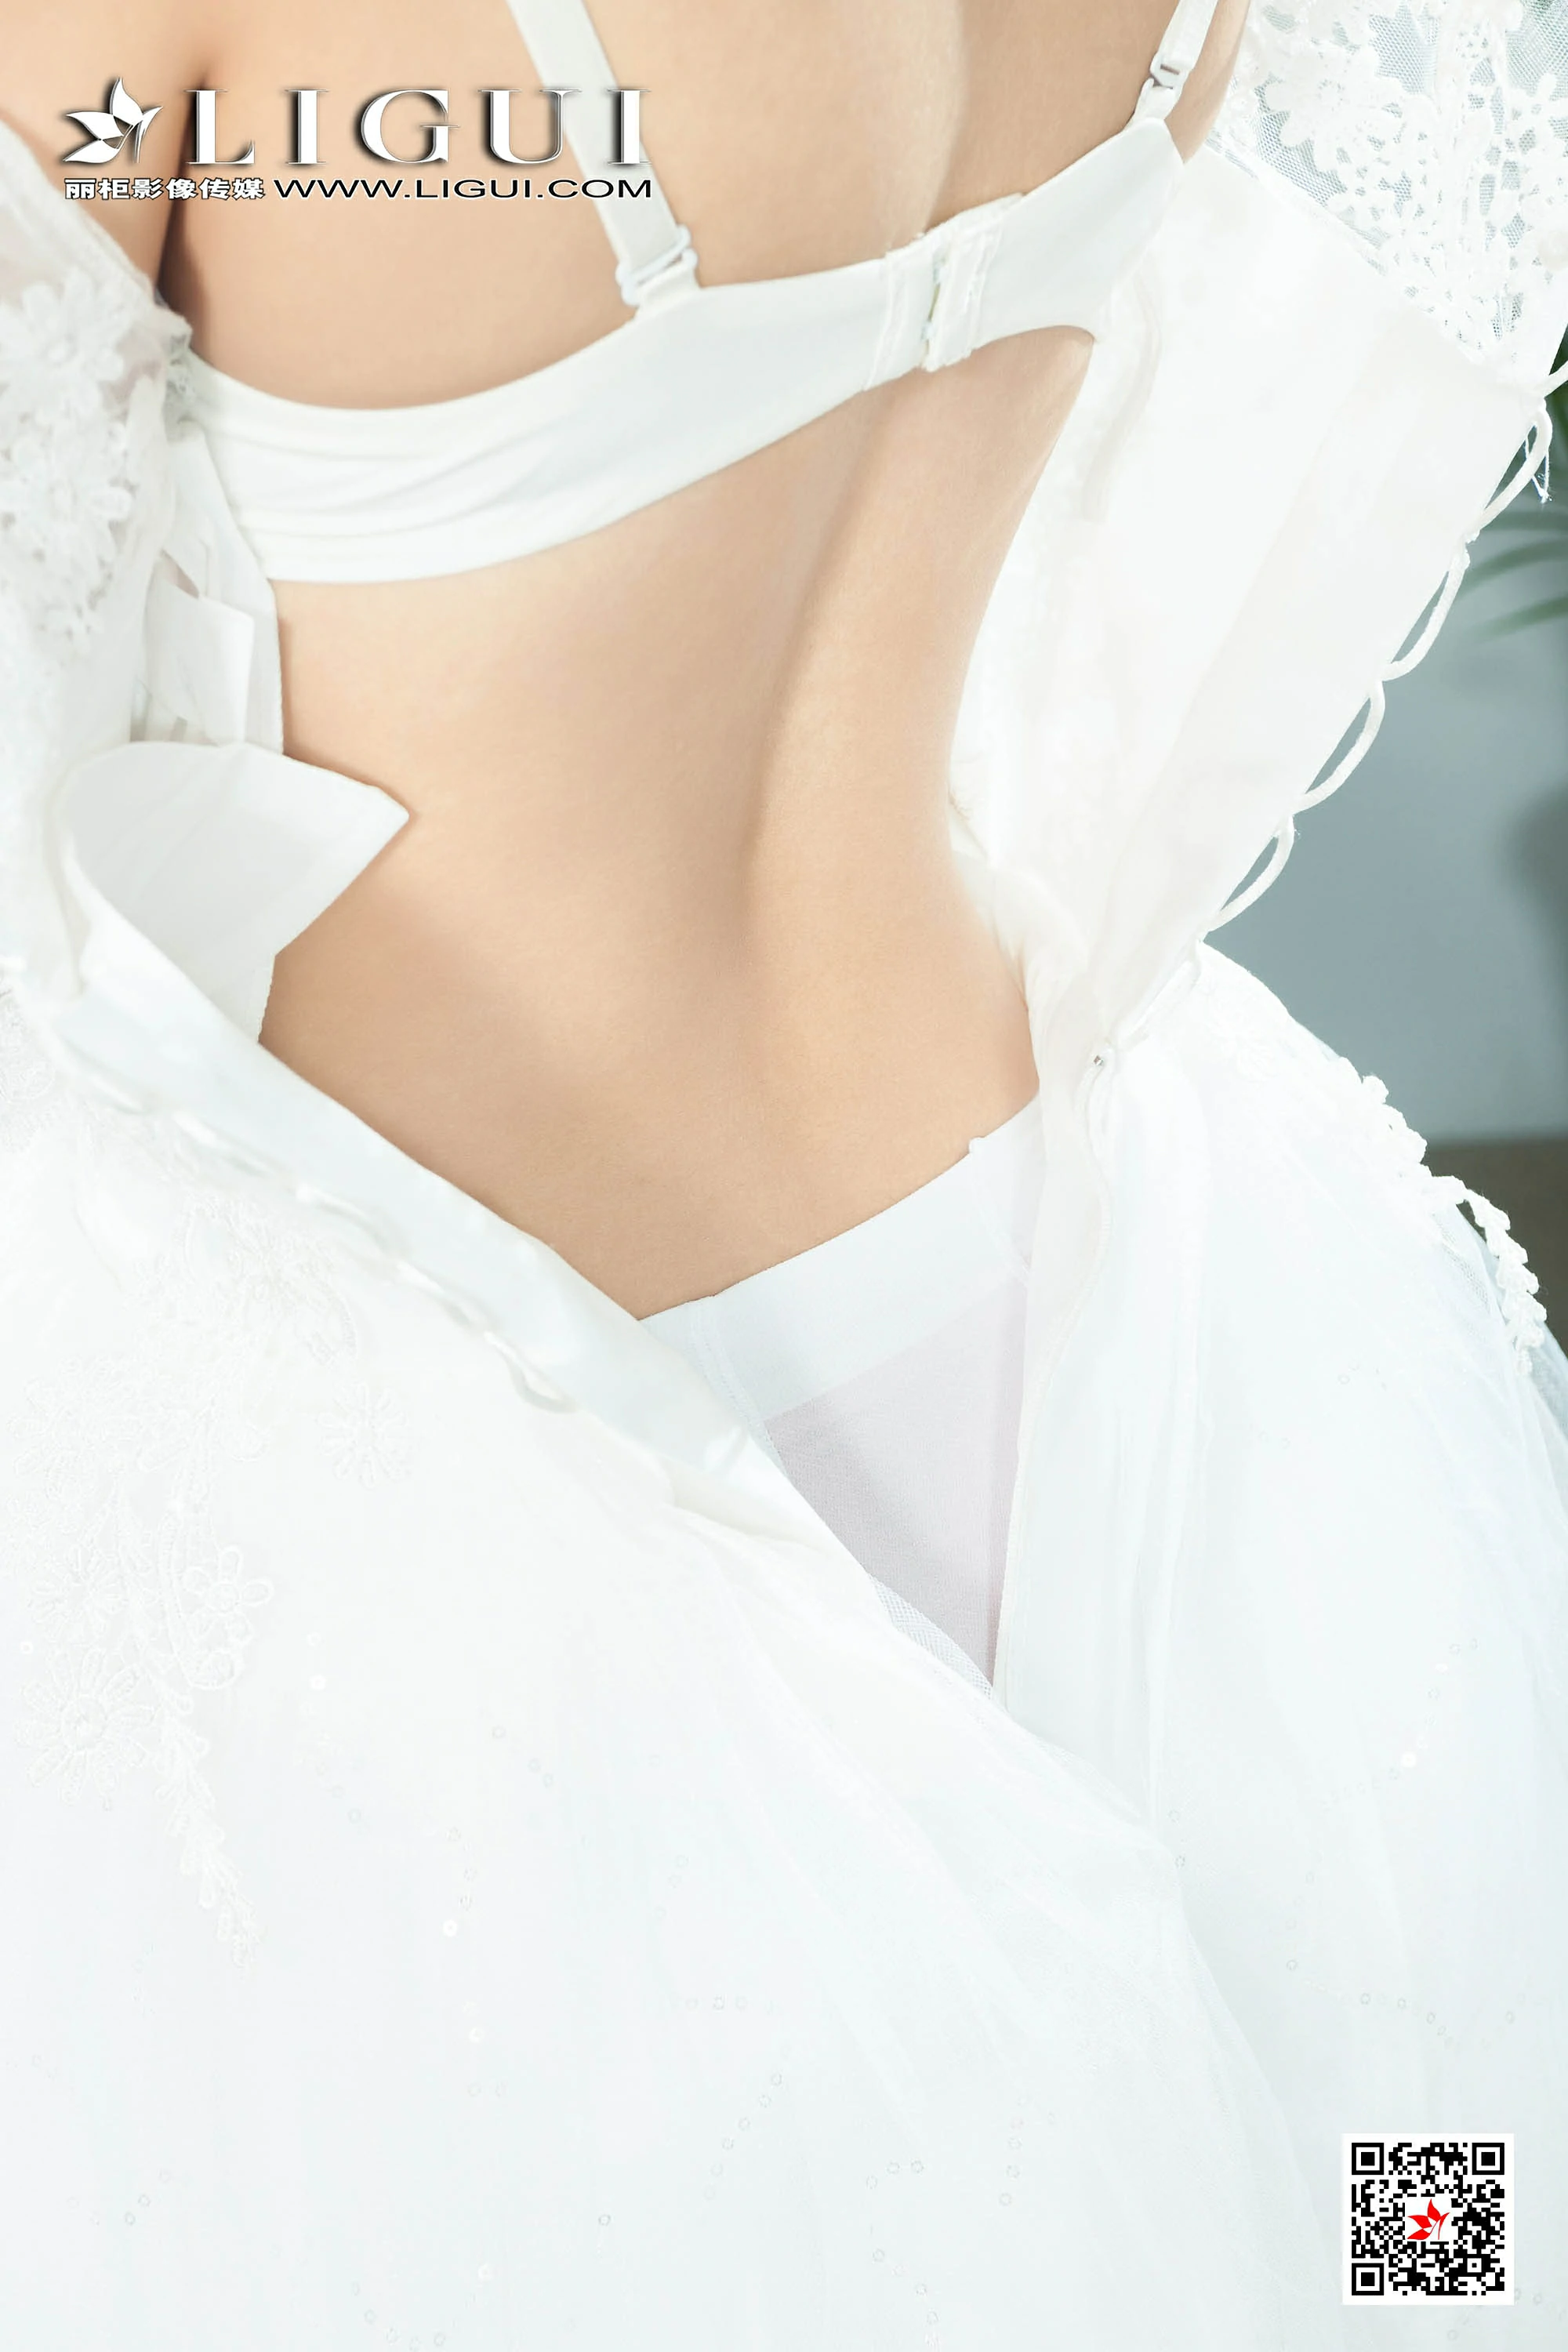 [Ligui丽柜会所]2019-11-28 性感新娘 钟情 白色婚纱与白色内衣加白色丝袜美腿私房写真集,